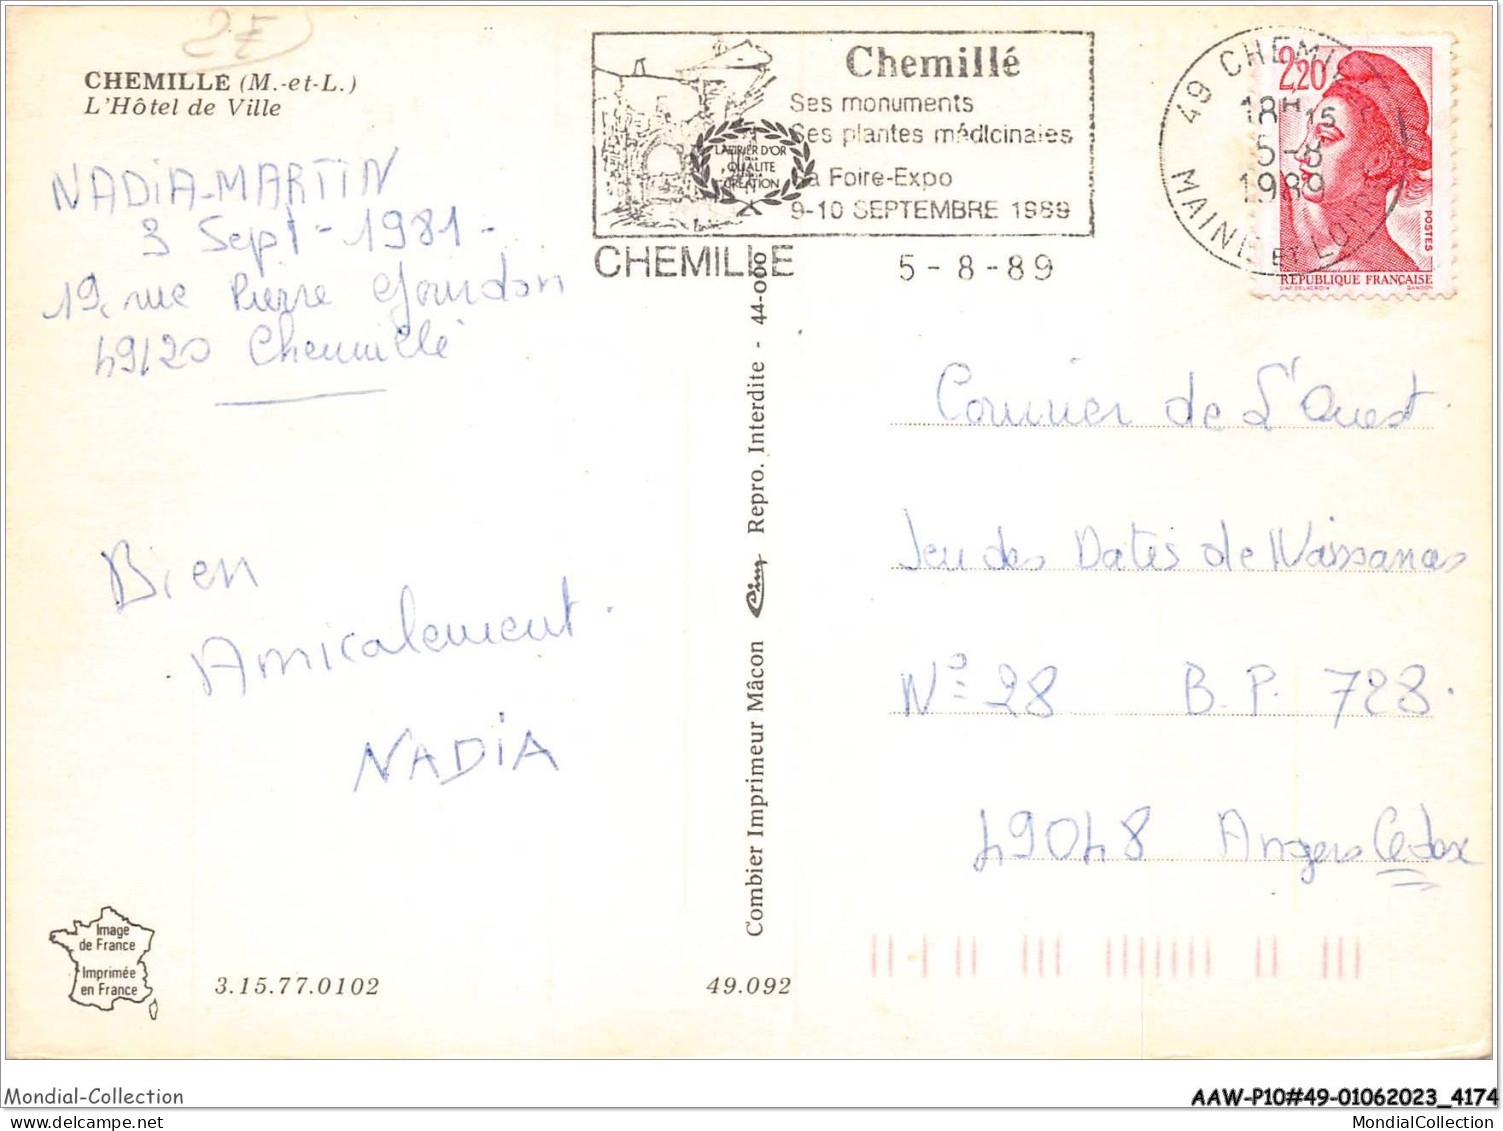 AAWP10-49-0874 - CHEMILLE - L'Hôtel De Ville - Chemille